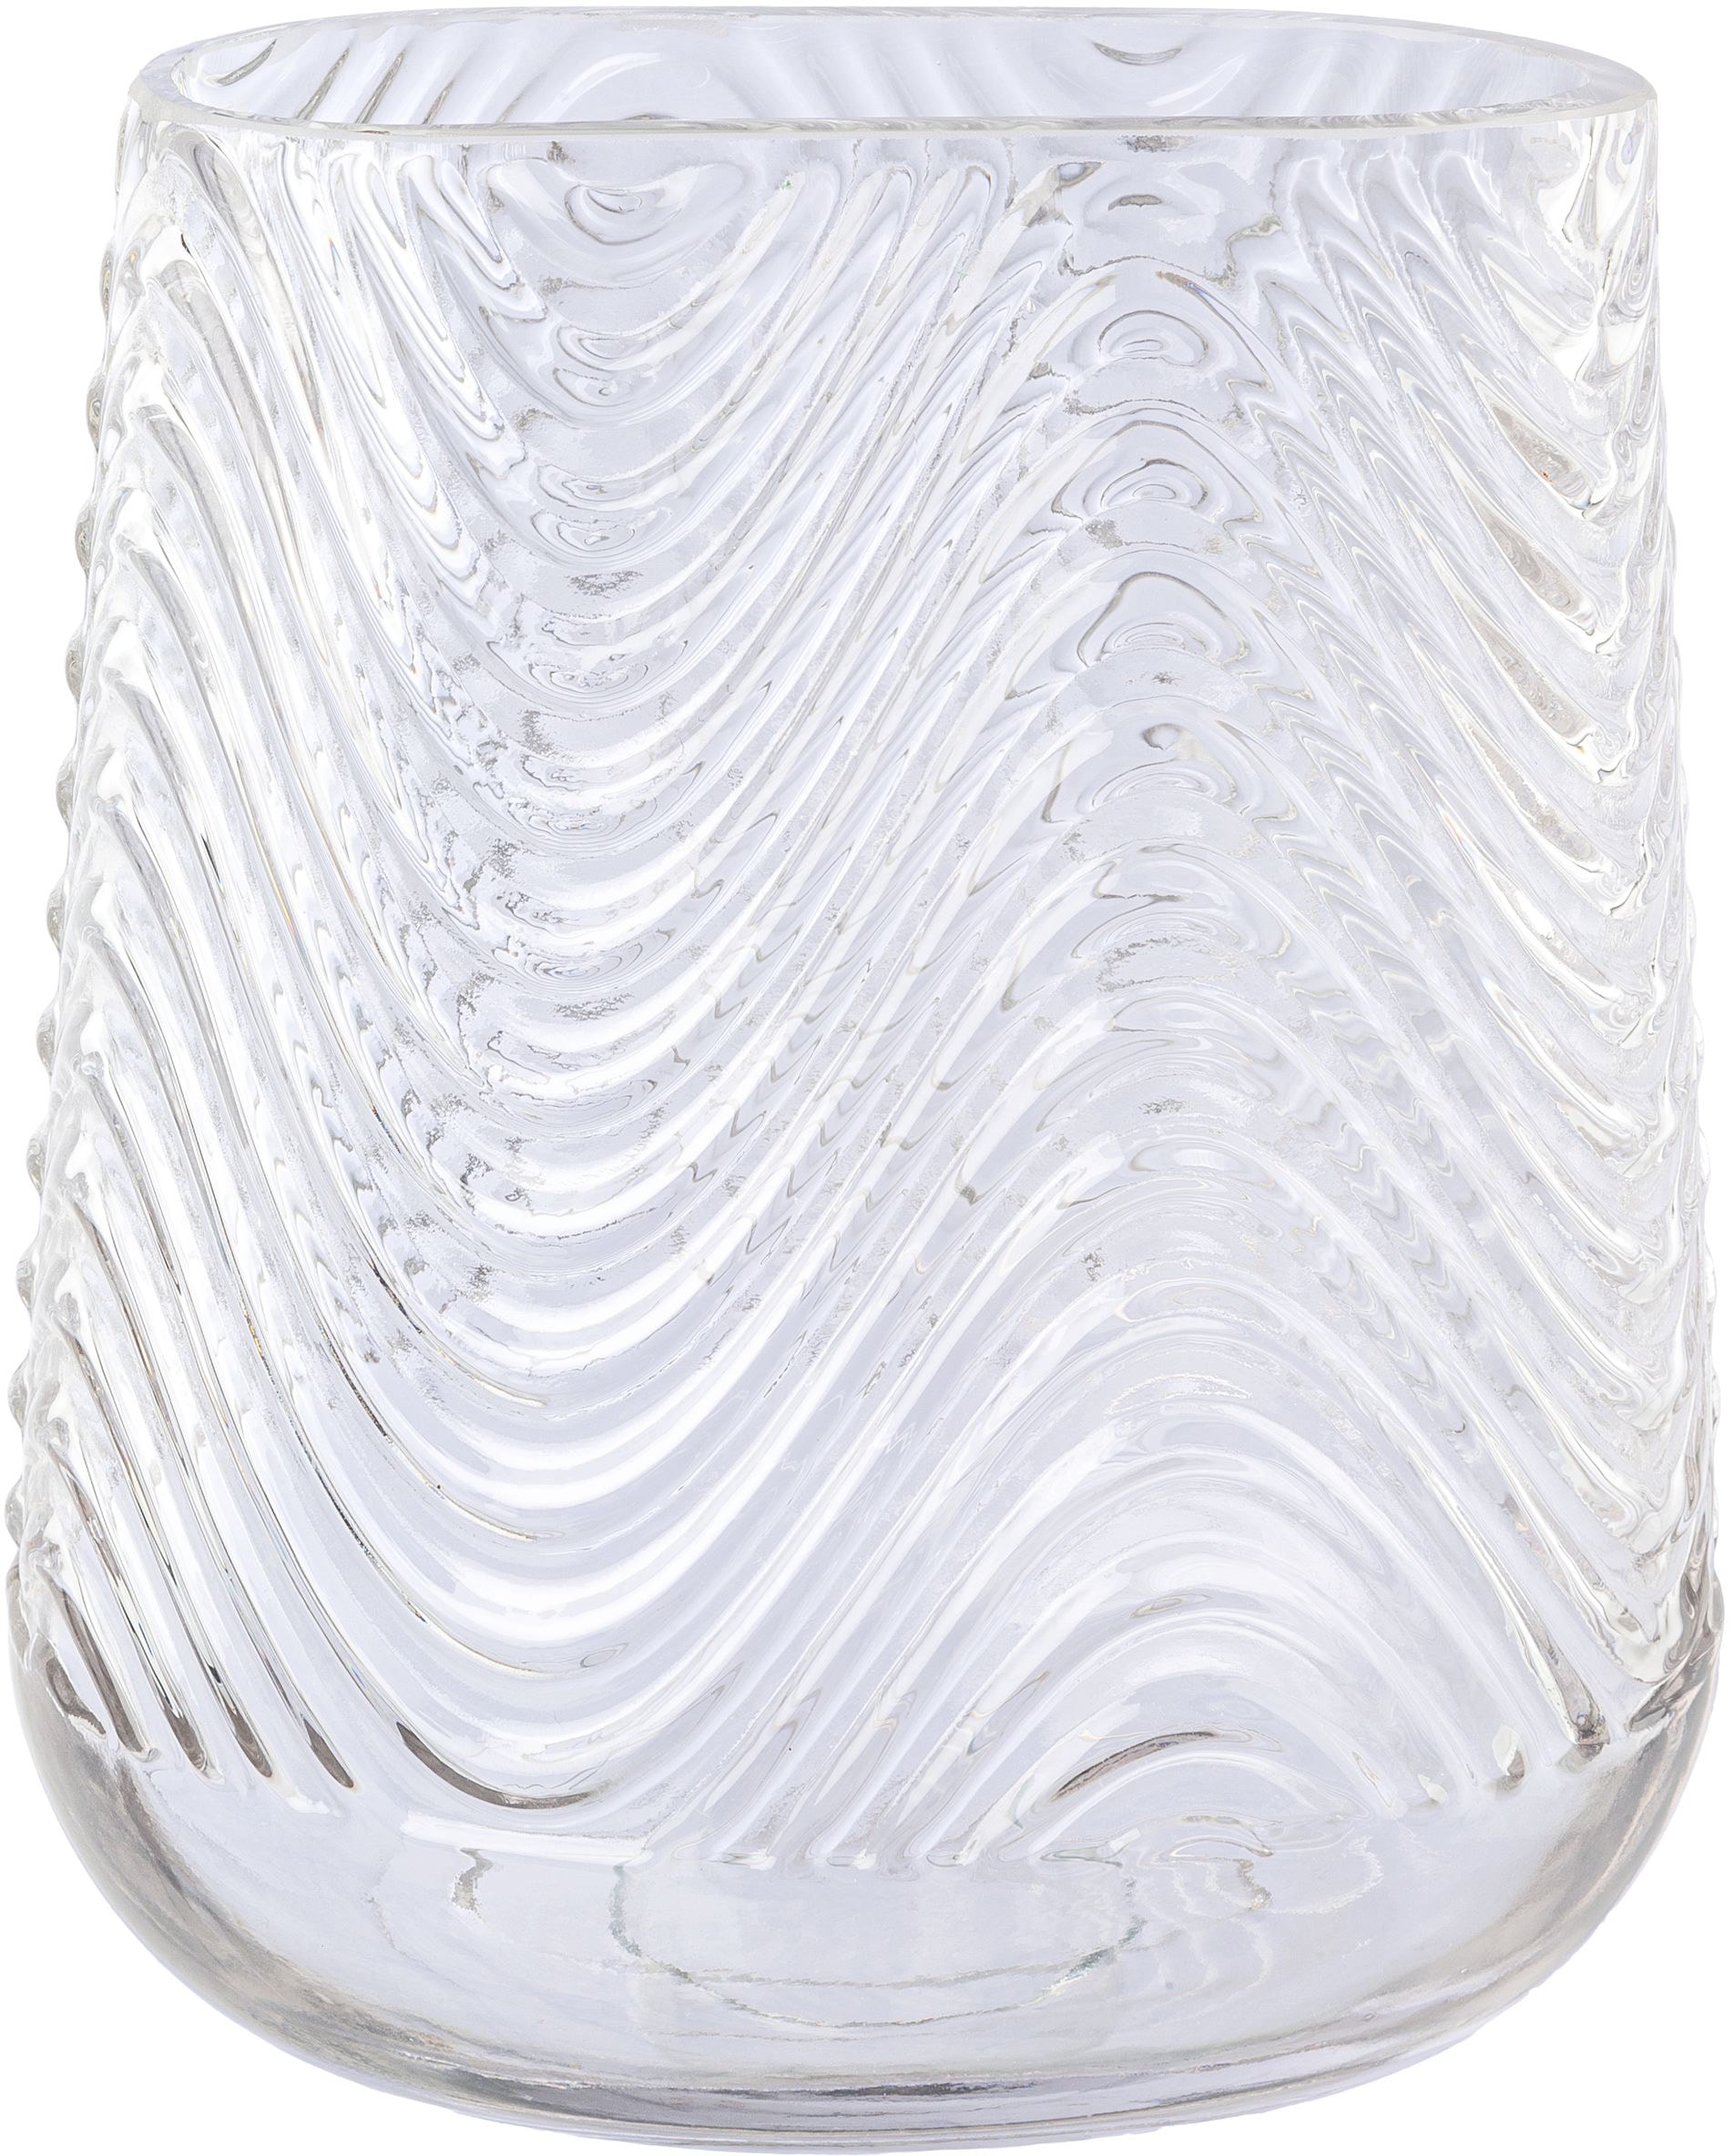 Tischvase »Vase aus Glas, mit Relief-Struktur-Oberfläche«, (1 St.), oval, Höhe ca. 21 cm